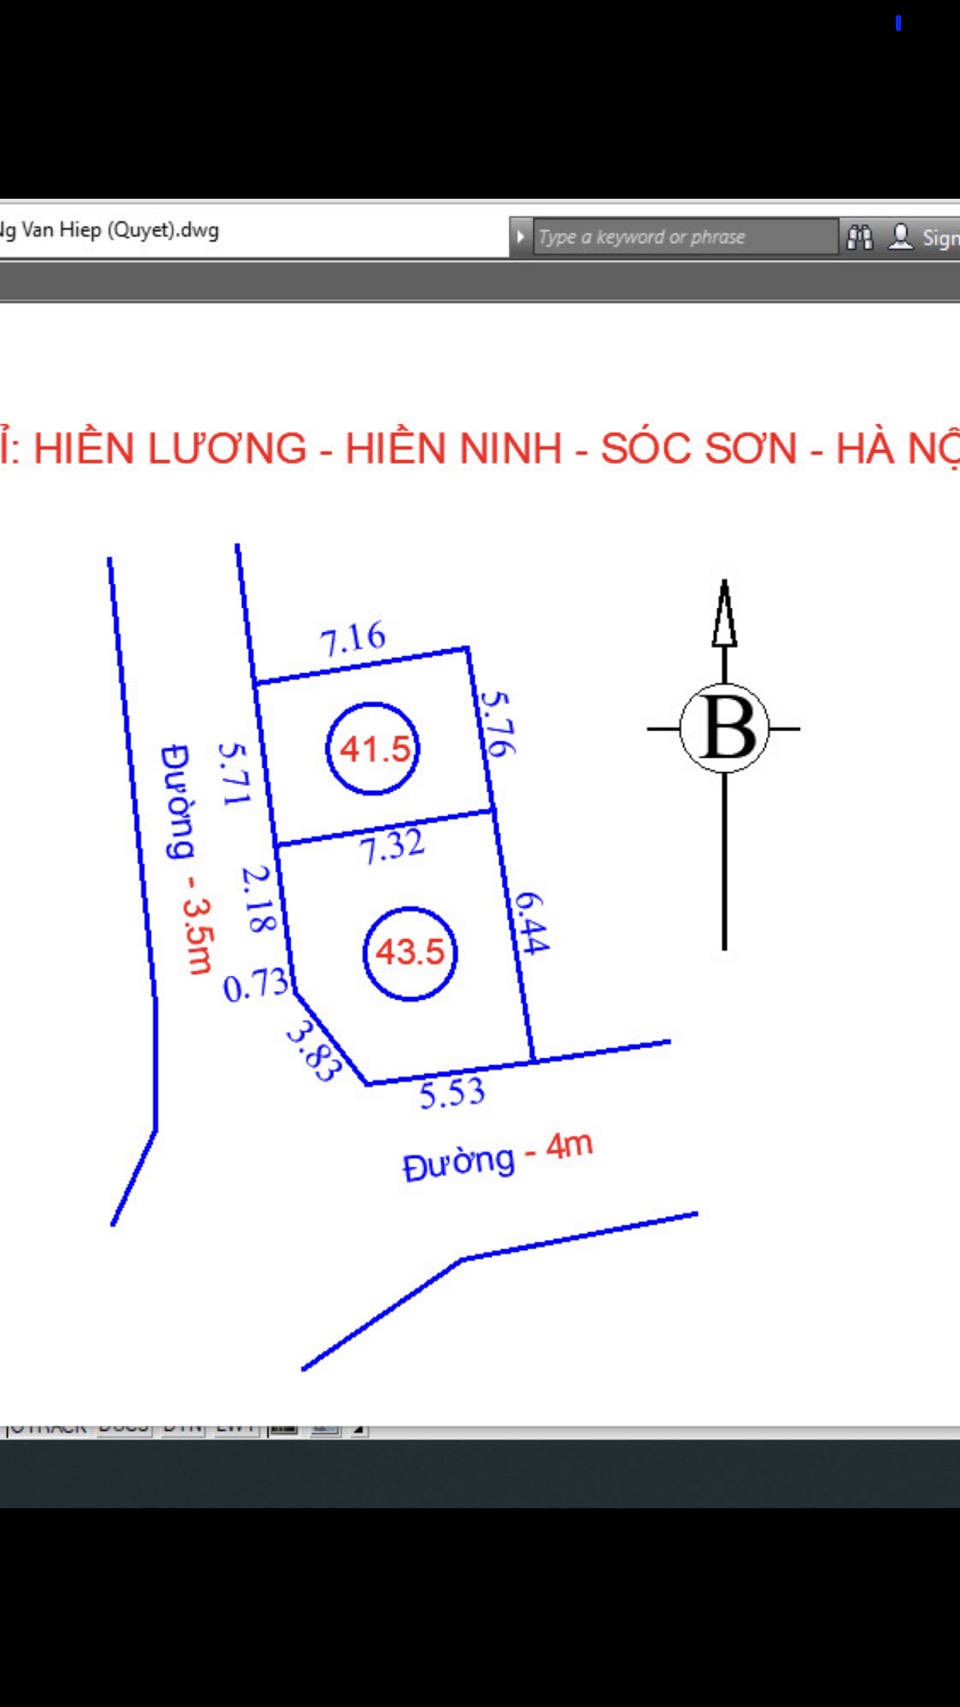 Chủ càn tiền nhờ  bán 41,5m2 tại Hiền Lương - Hiền Ninh - Sóc Sơn. Đường thông oto vào đất, bao - Ảnh 1